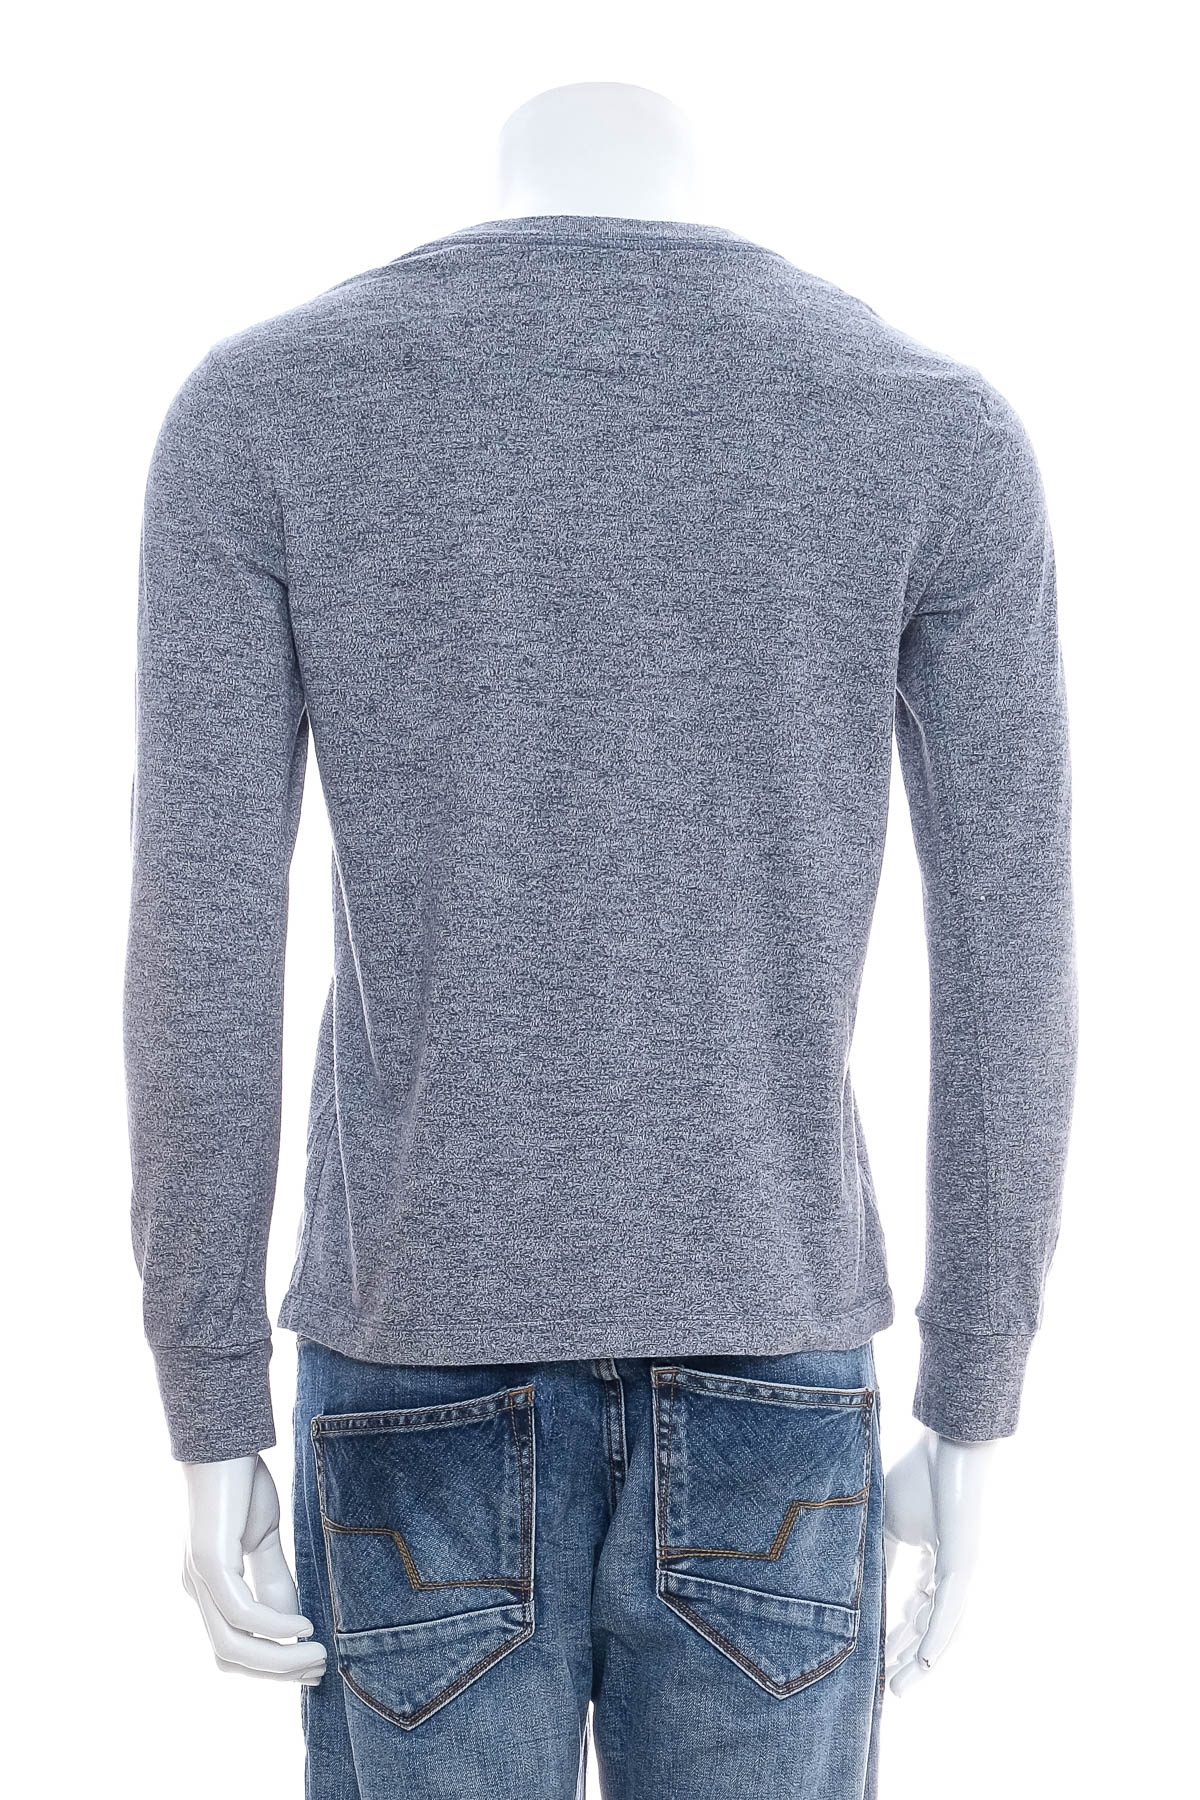 Men's blouse - Lawman Jeans - 1